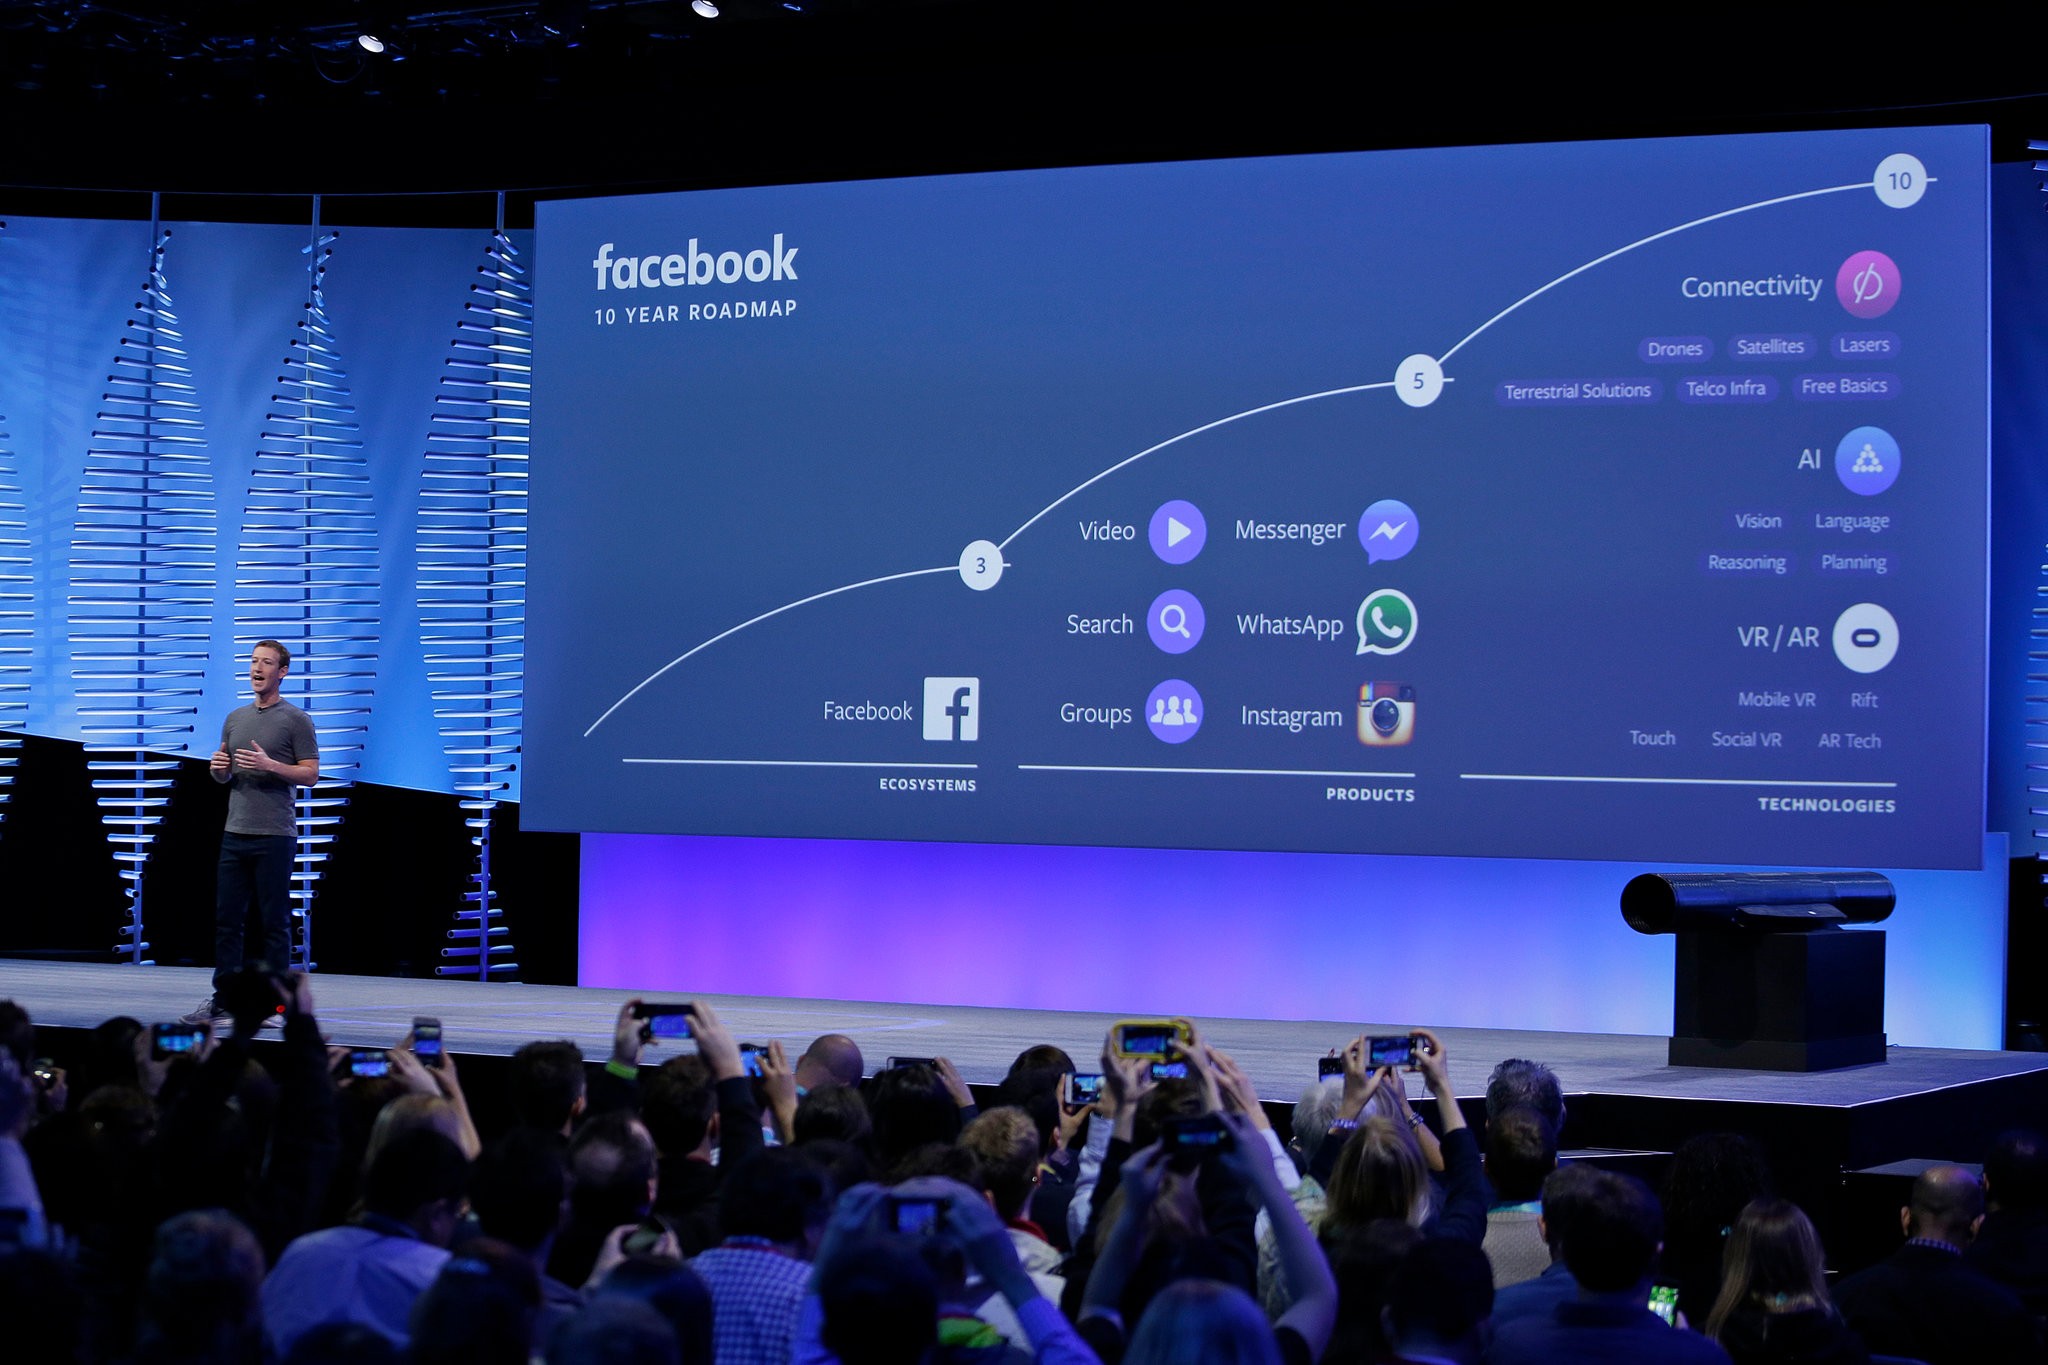 Quyền lực và sự giàu có của Facebook là do gần 2 tỷ người dùng mang lại. Ảnh: AP. 